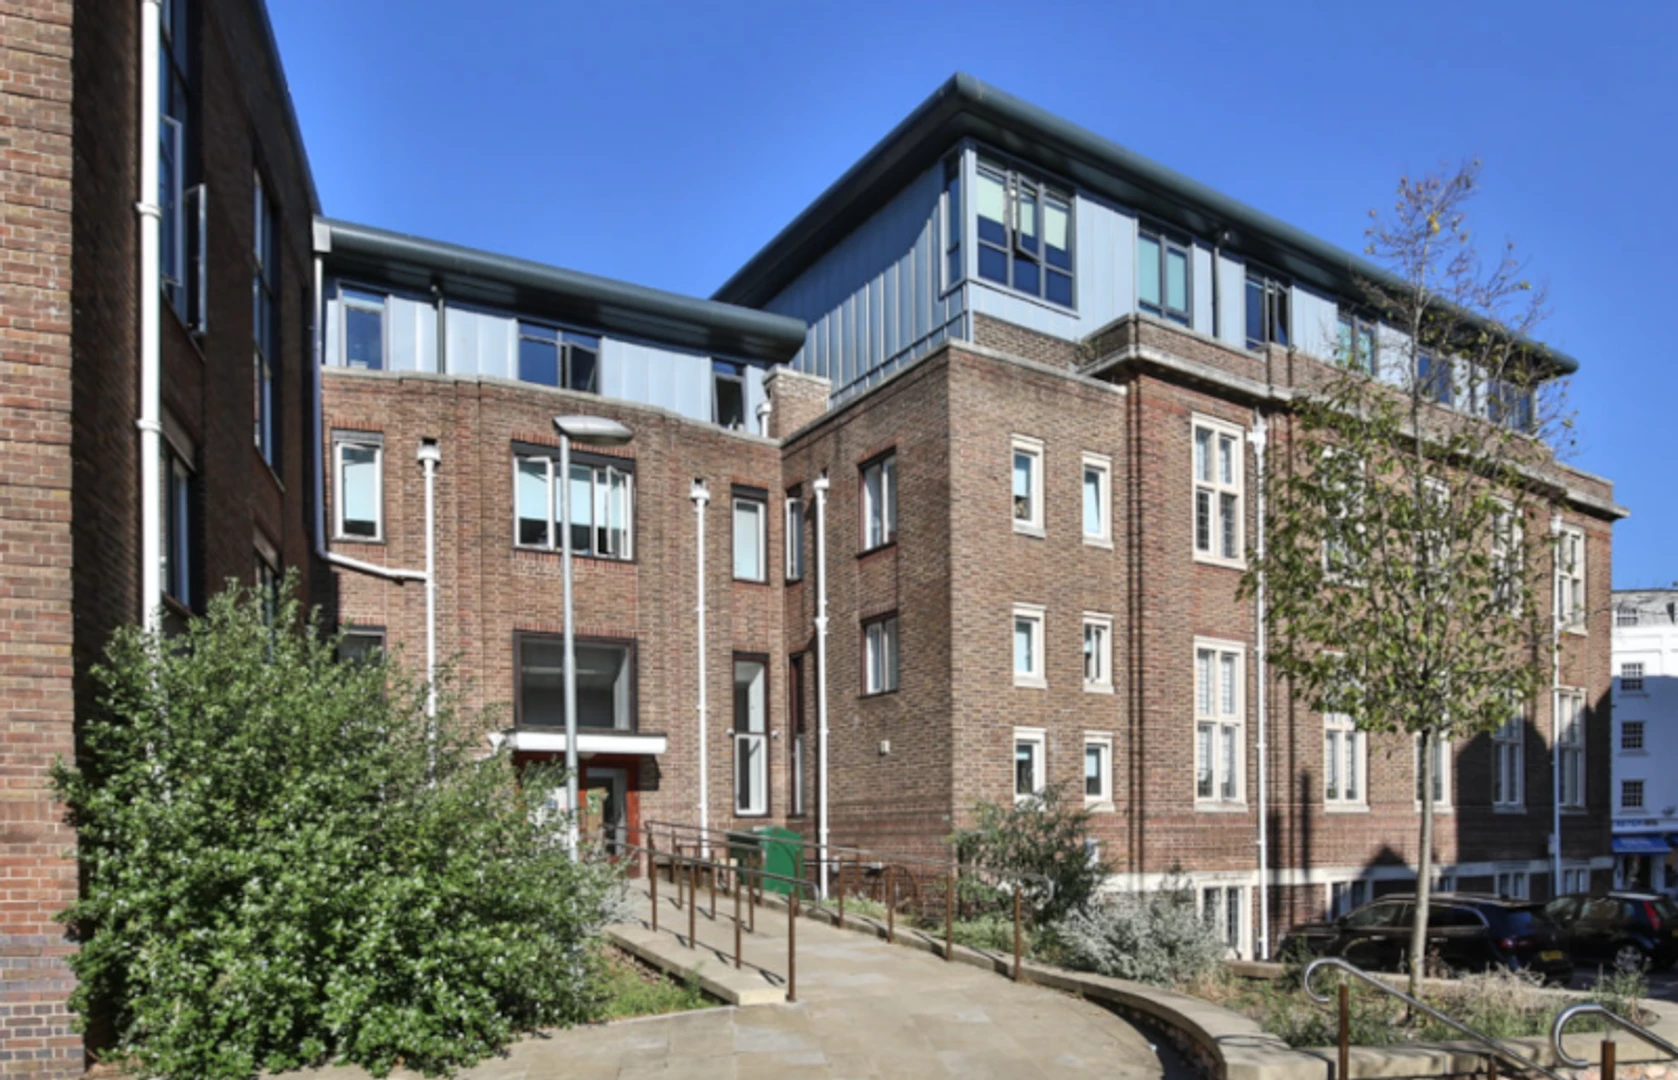 Apartamento moderno e brilhante em Exeter